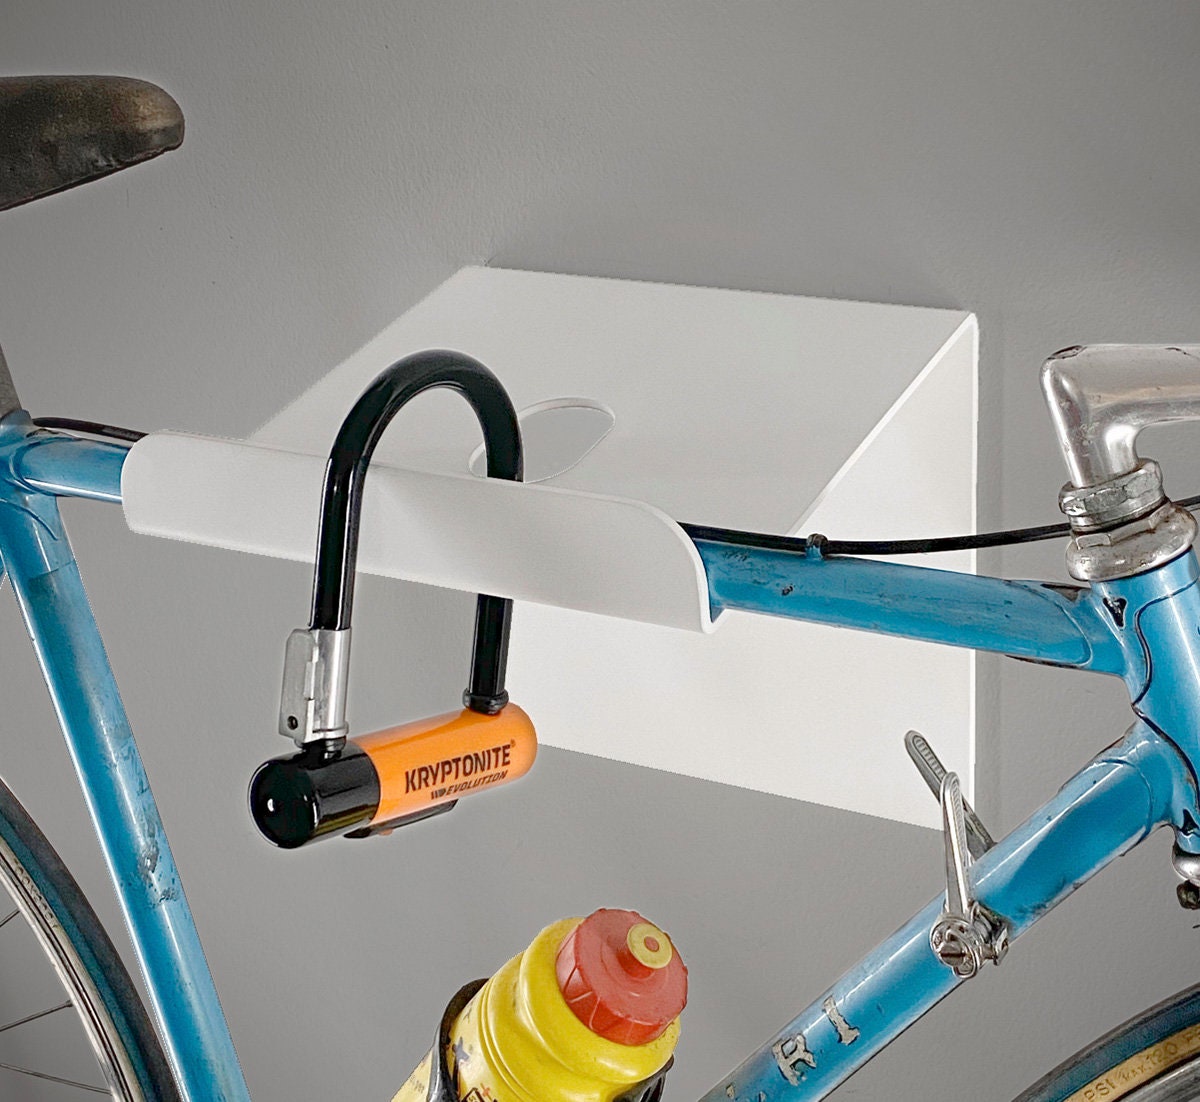 Soporte de pared para bicicletas - Aluminio - Plata - D-RACK